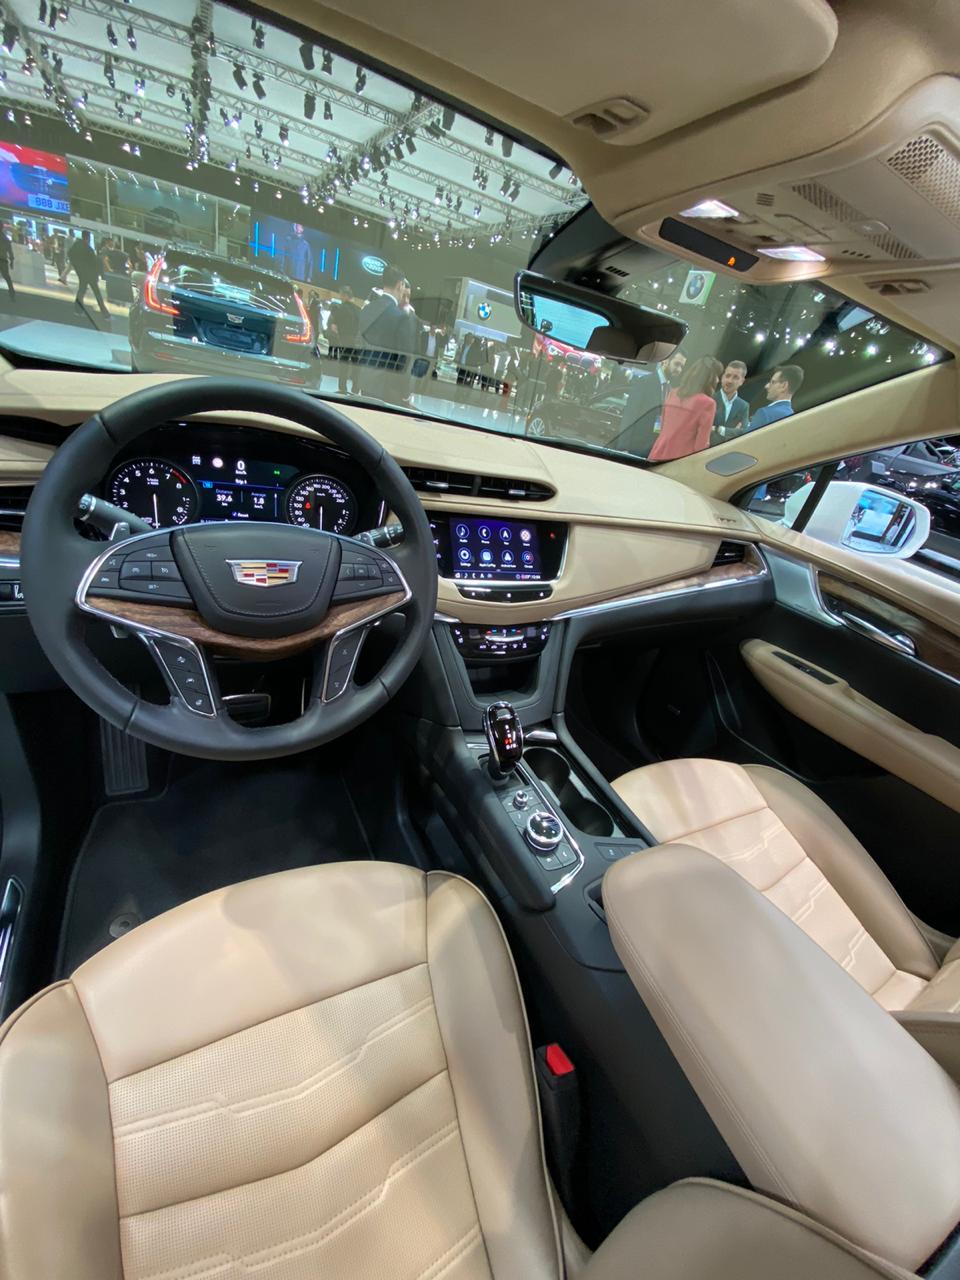 "بالصور" سيارات كاديلاك 2020 تتألق في معرض دبي الدولي للسيارات 93